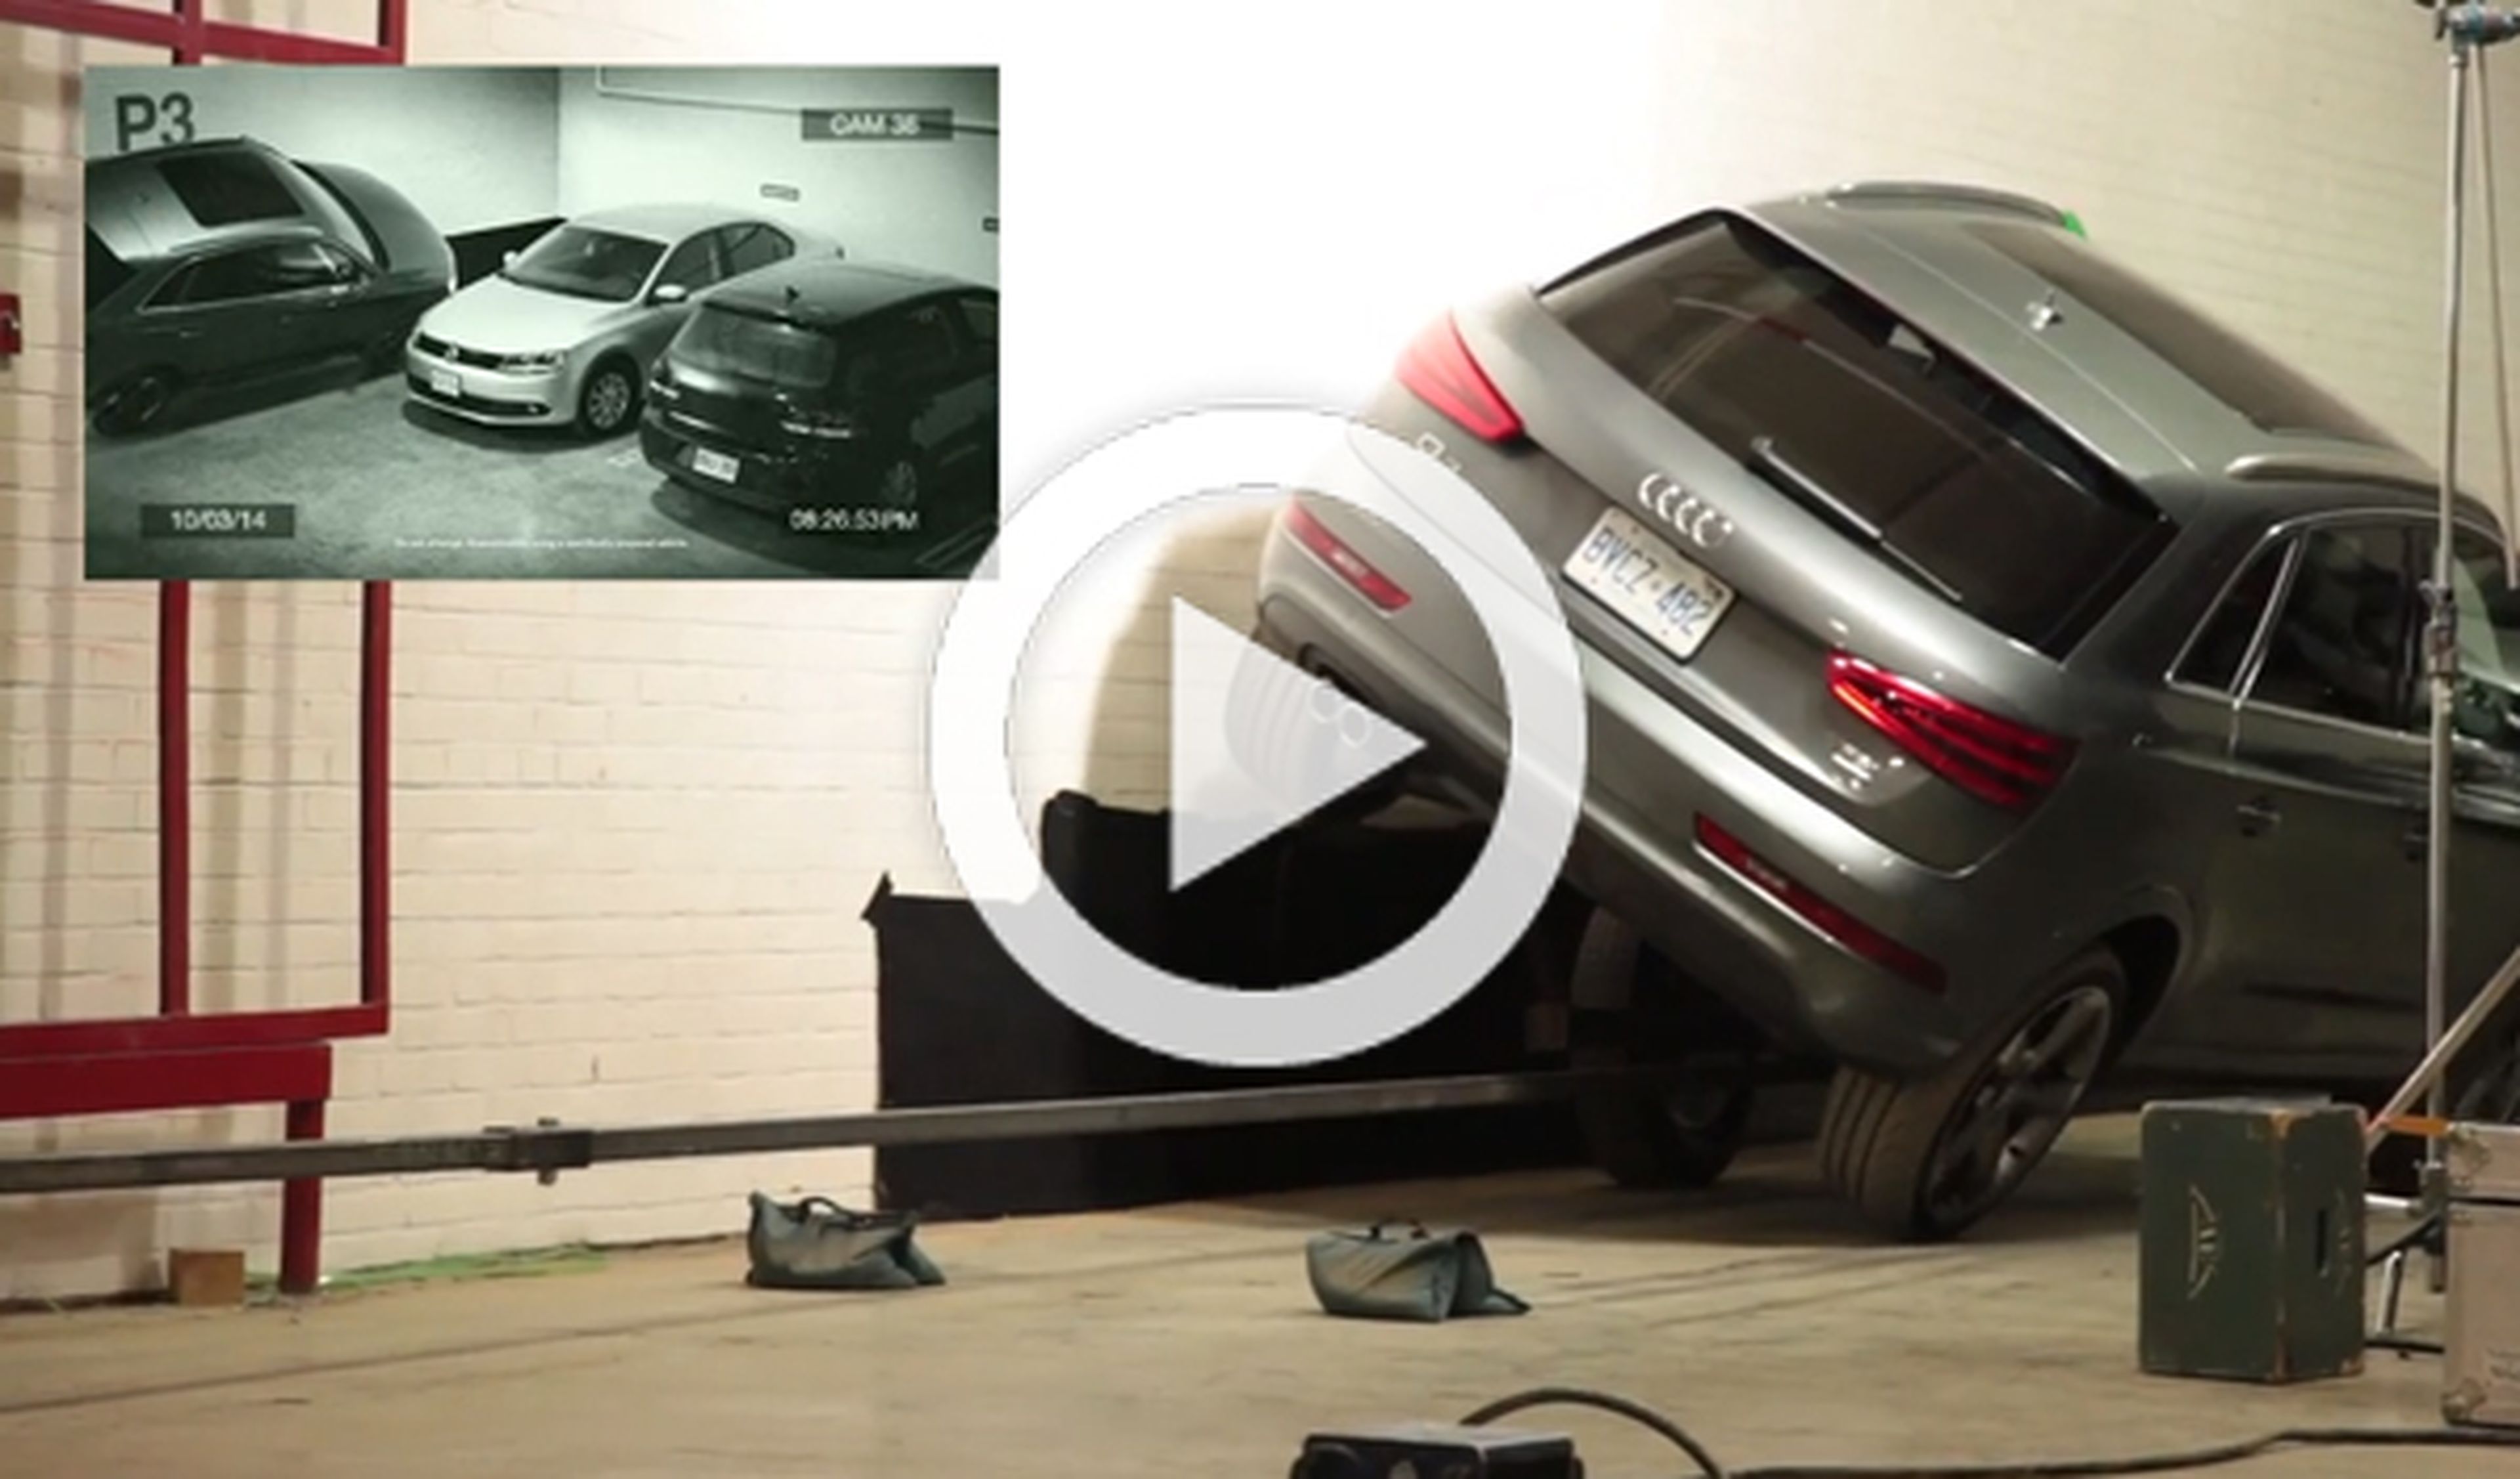 Un anuncio muy curioso: el Audi Q3 aparca a dos ruedas